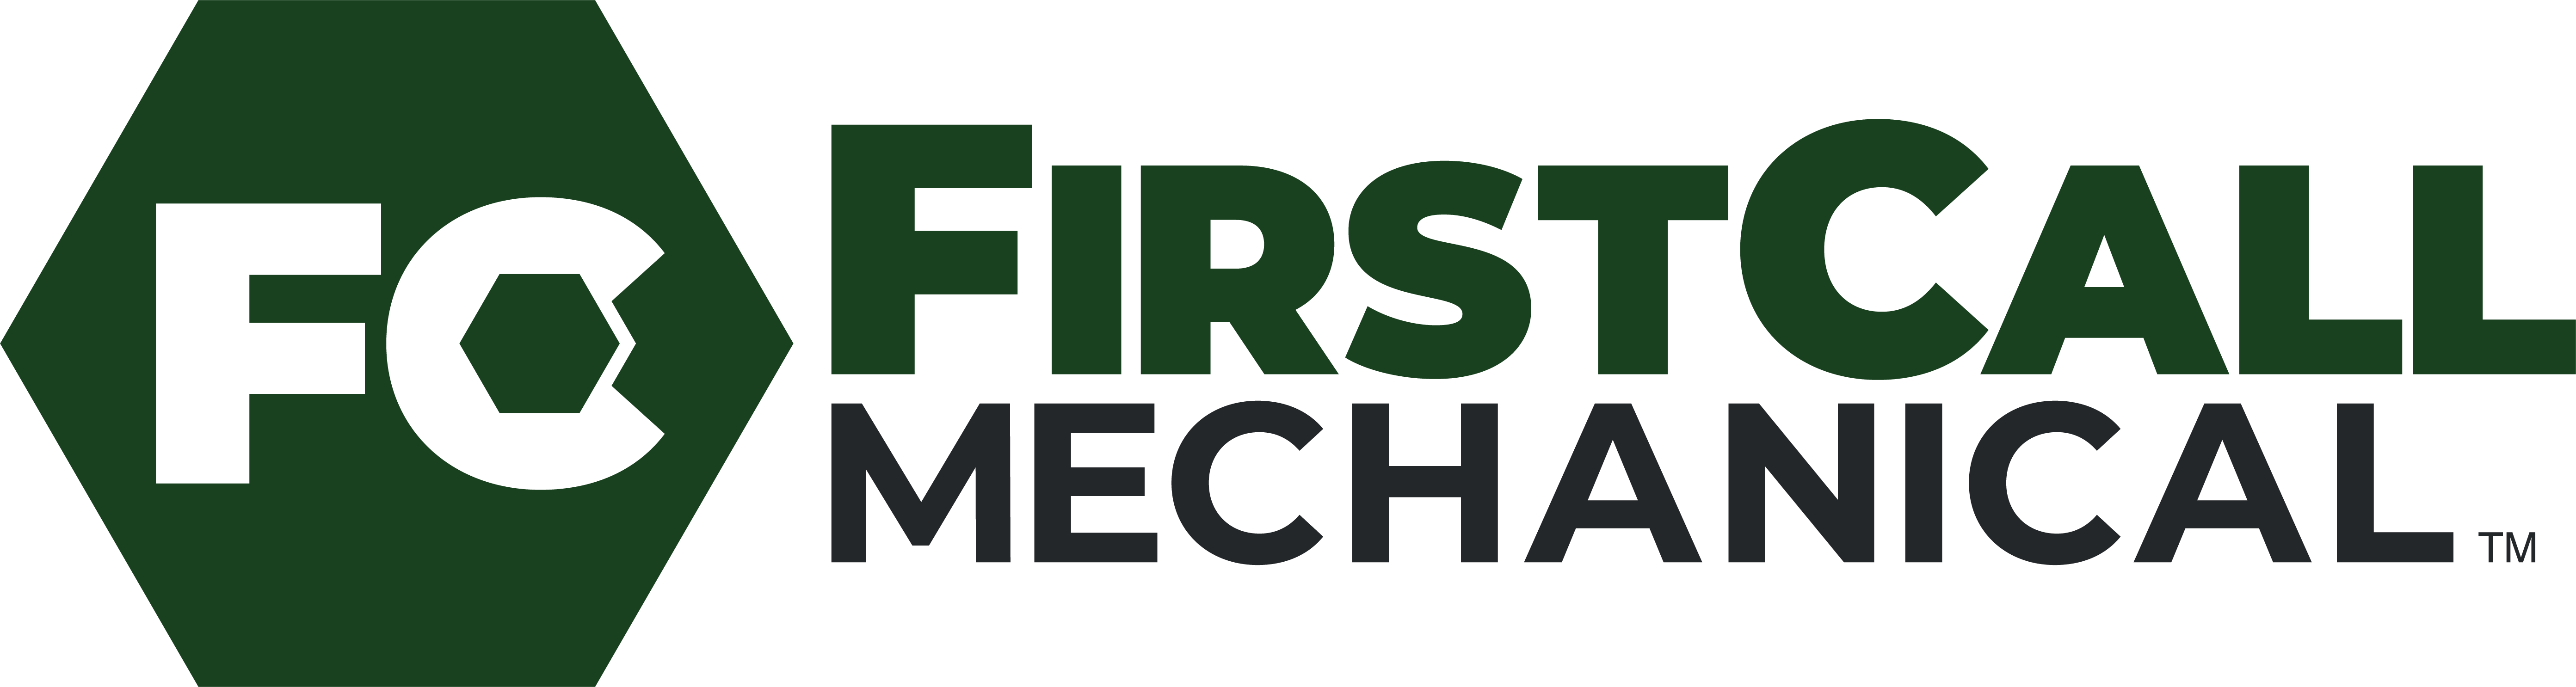 Firstcall Mechanical Group Texas, LLC Logo